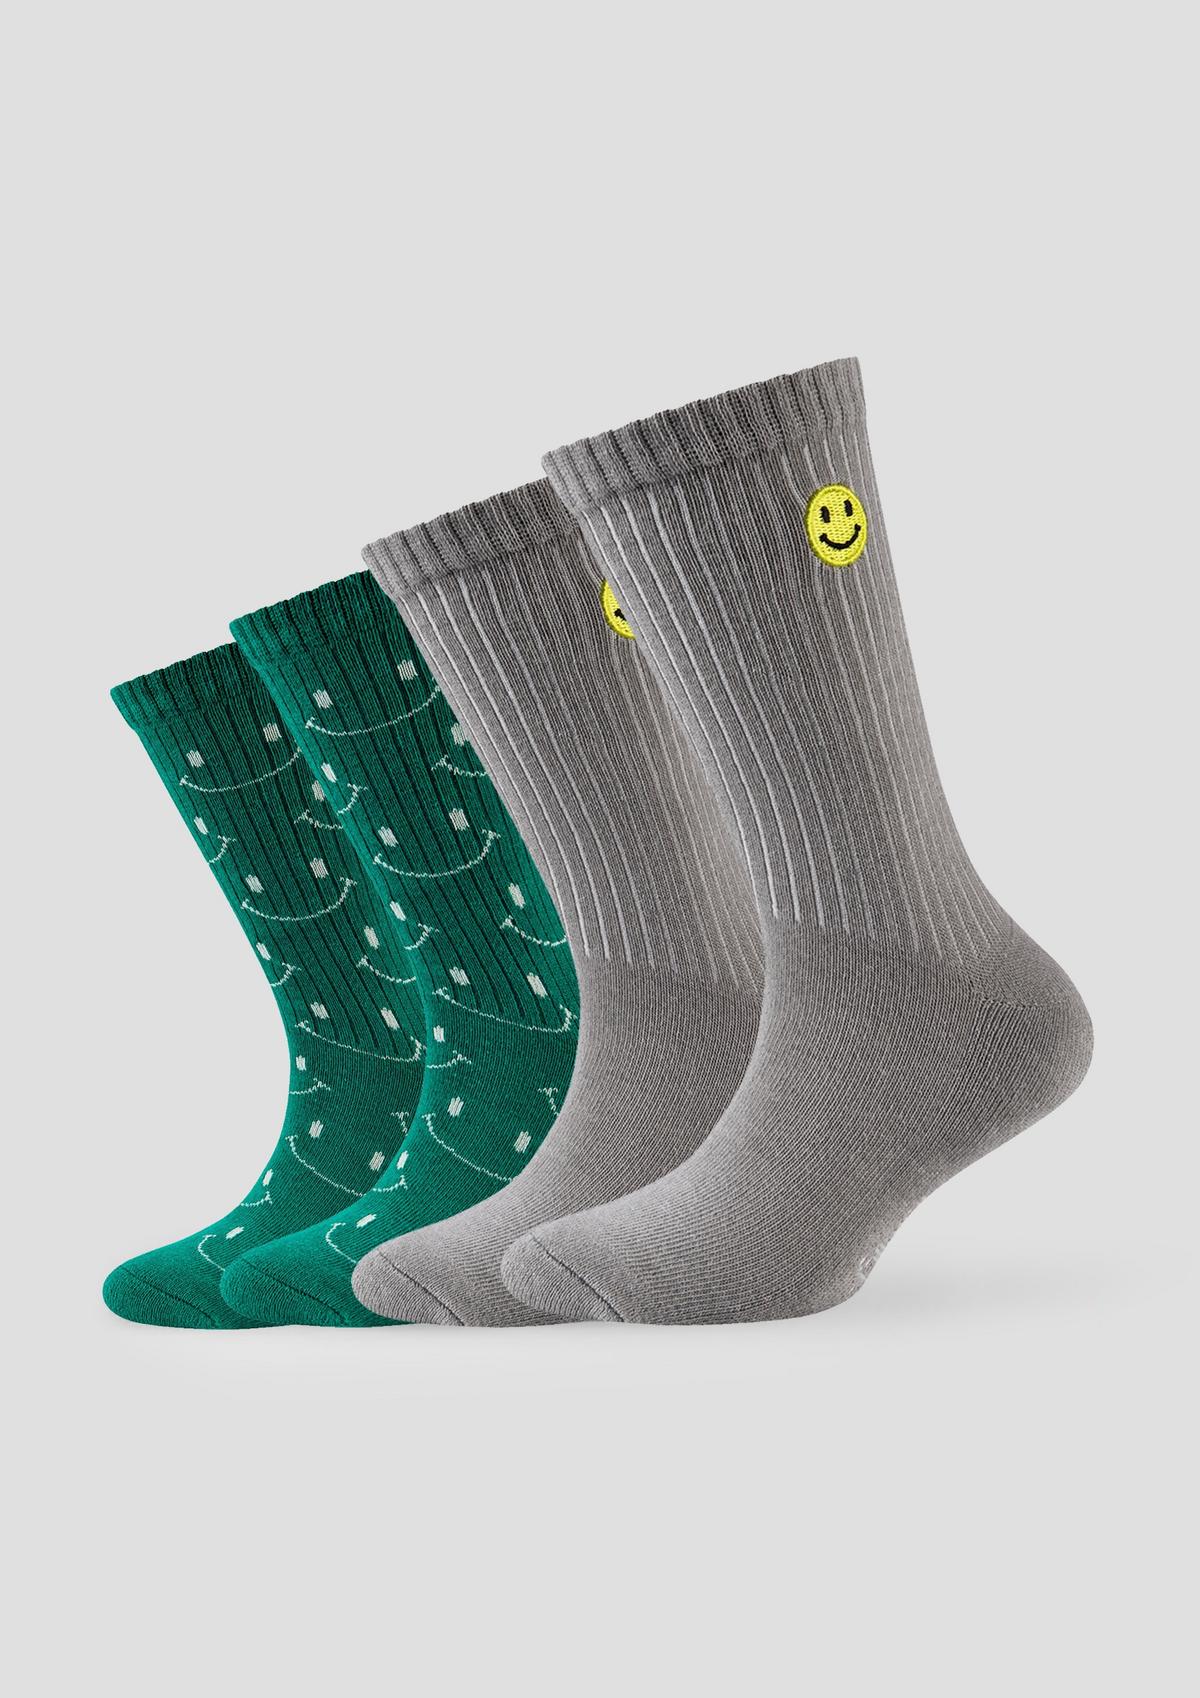 Socken mit Smiley-Details weiß 